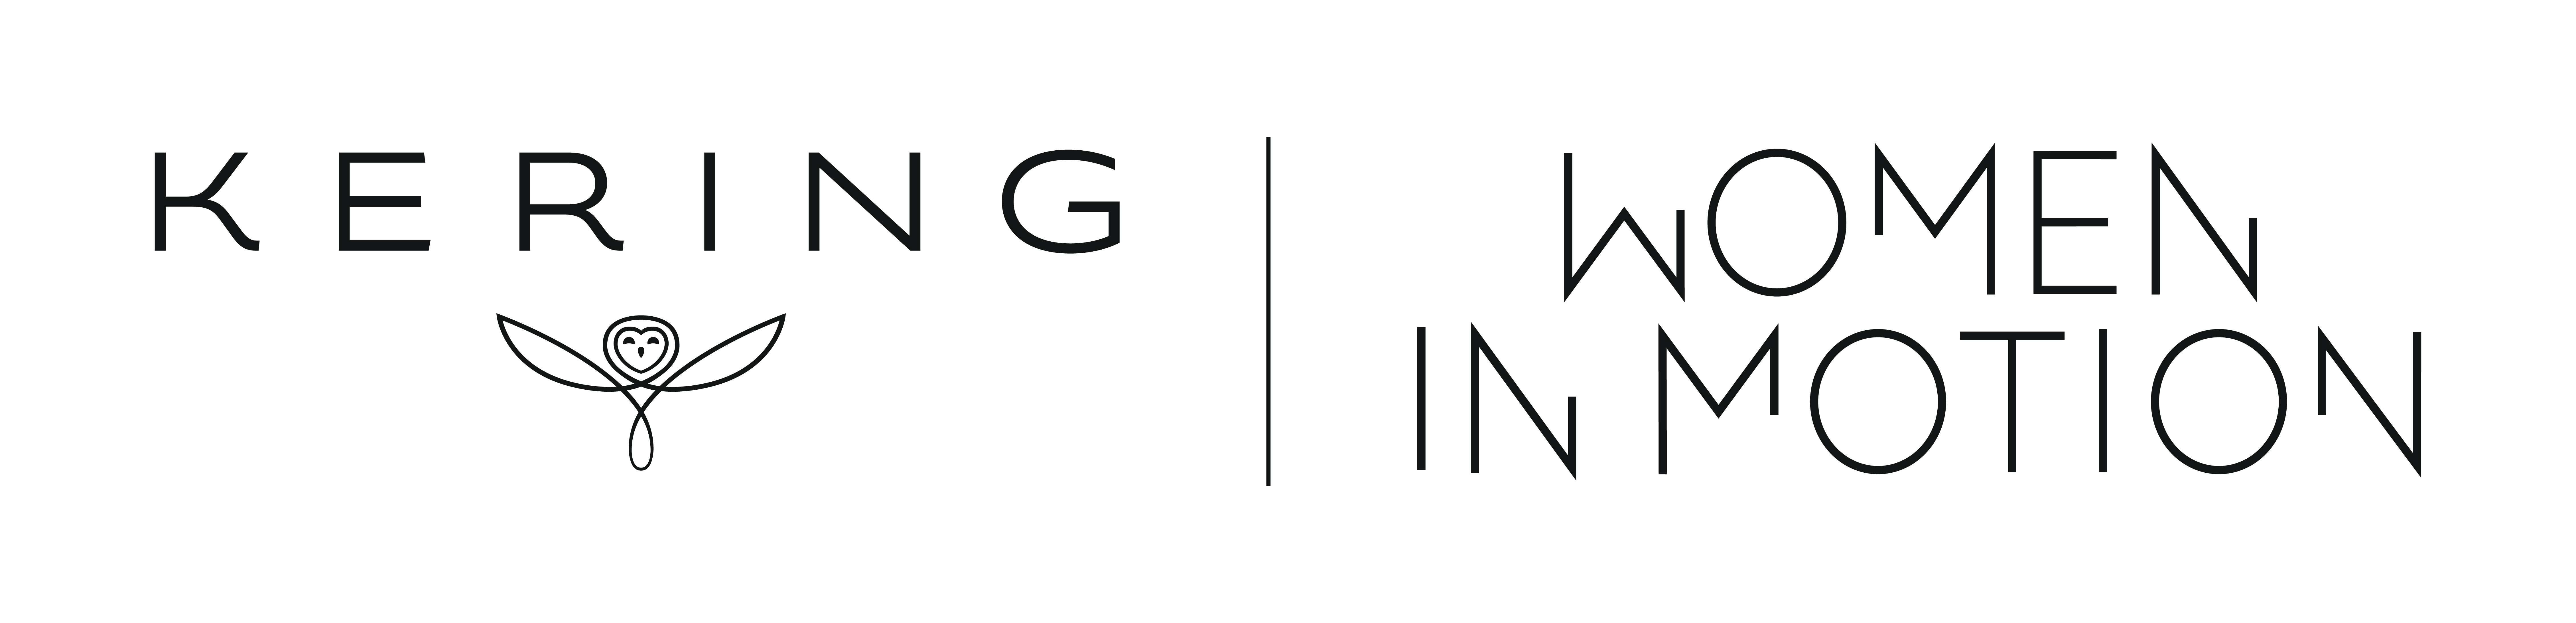 logo Keiring